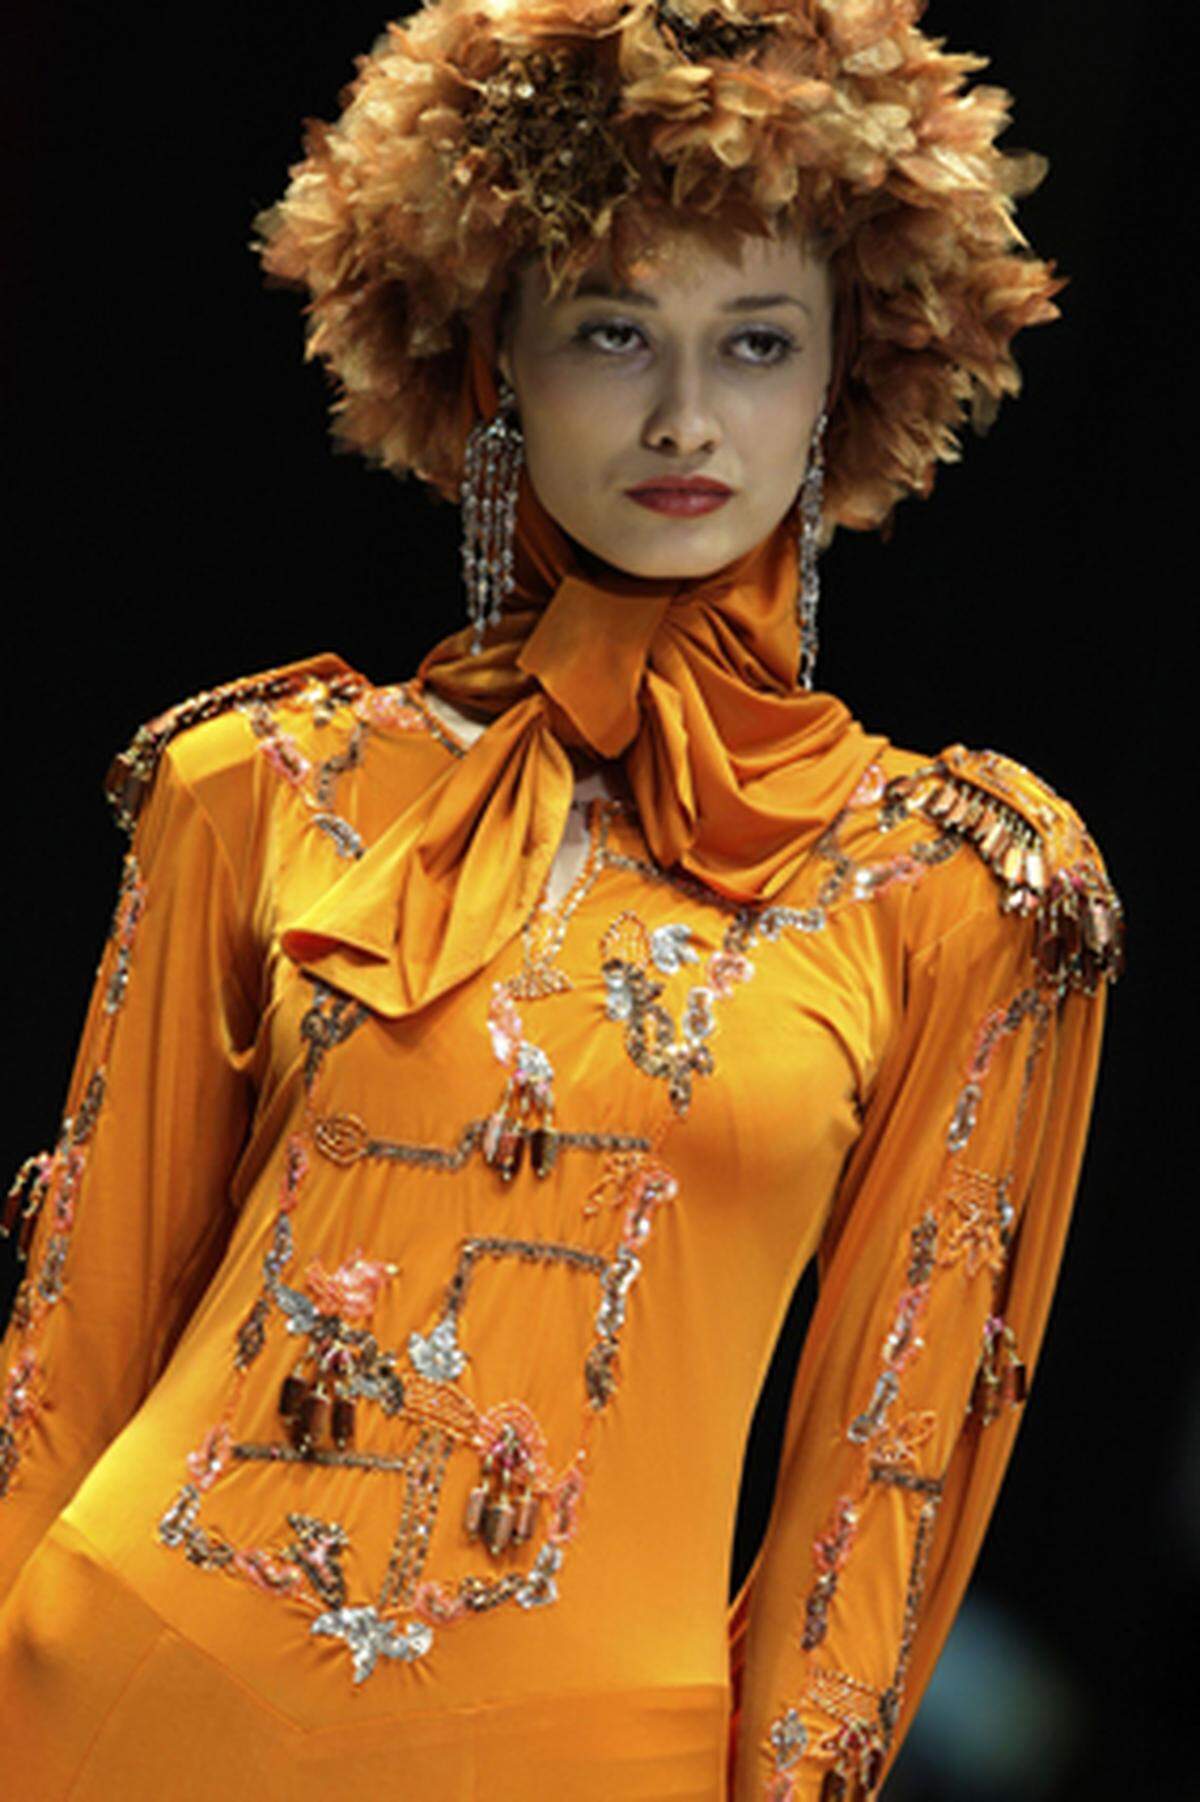 Malaysia International Fashion Week, Designer: Fendy Armany